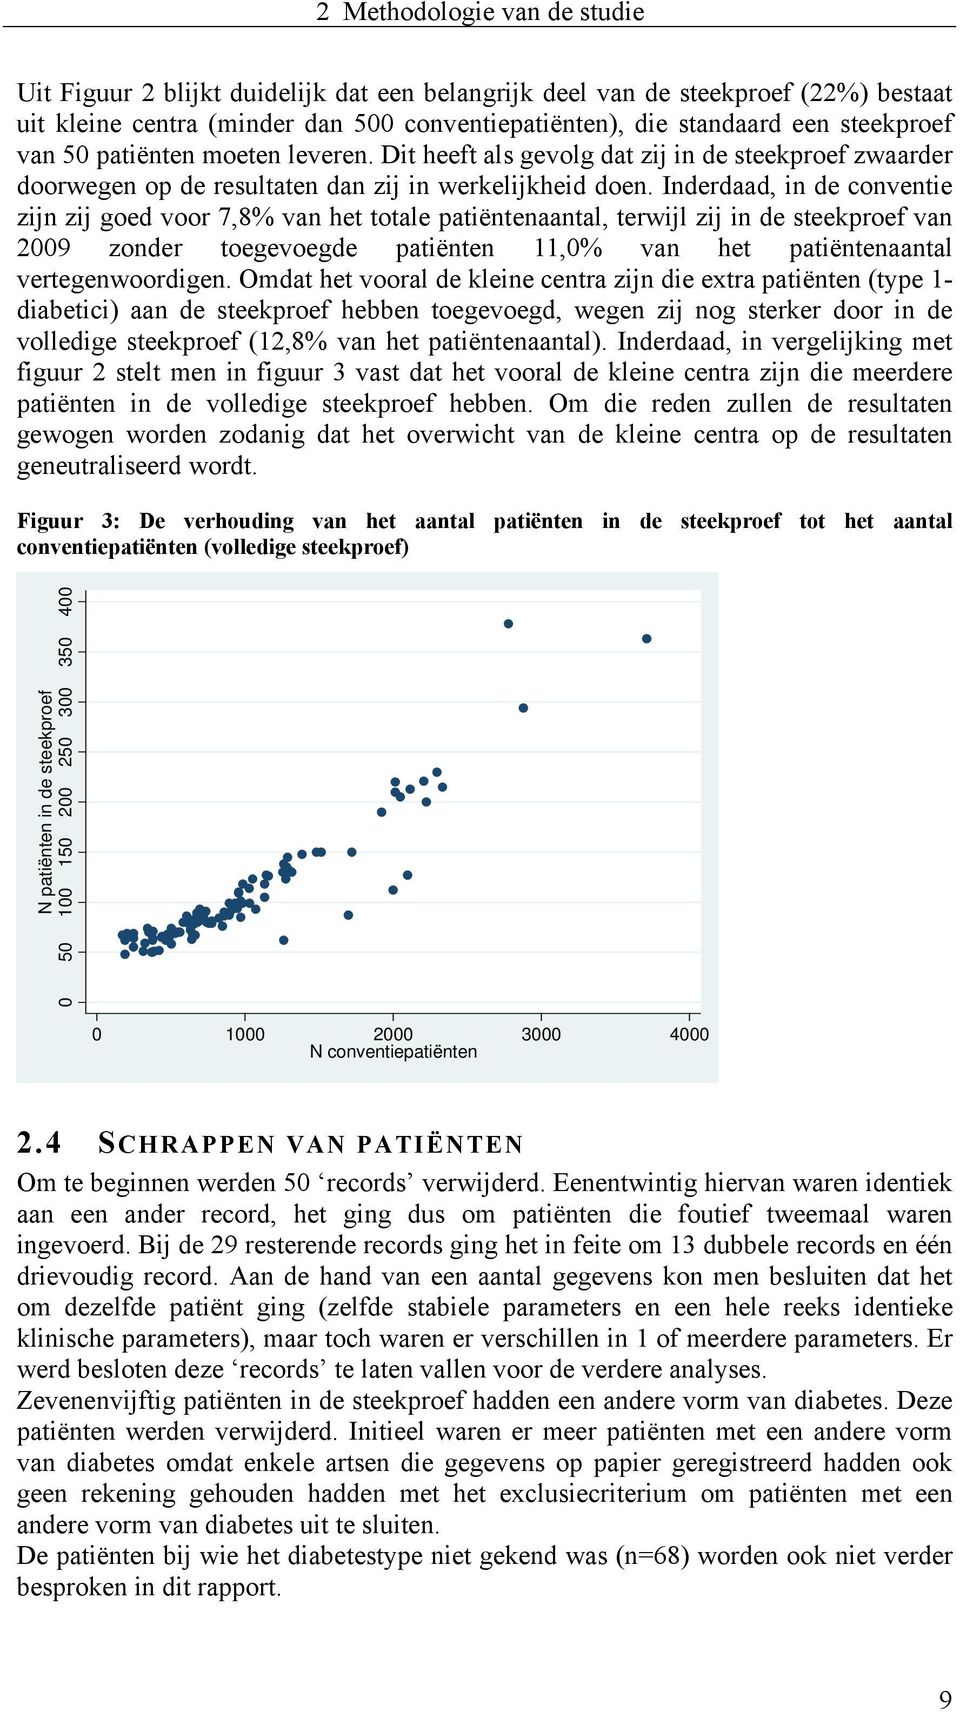 Inderdaad, in de conventie zijn zij goed voor 7,8% van het totale patiëntenaantal, terwijl zij in de steekproef van 2009 zonder toegevoegde patiënten 11,0% van het patiëntenaantal vertegenwoordigen.